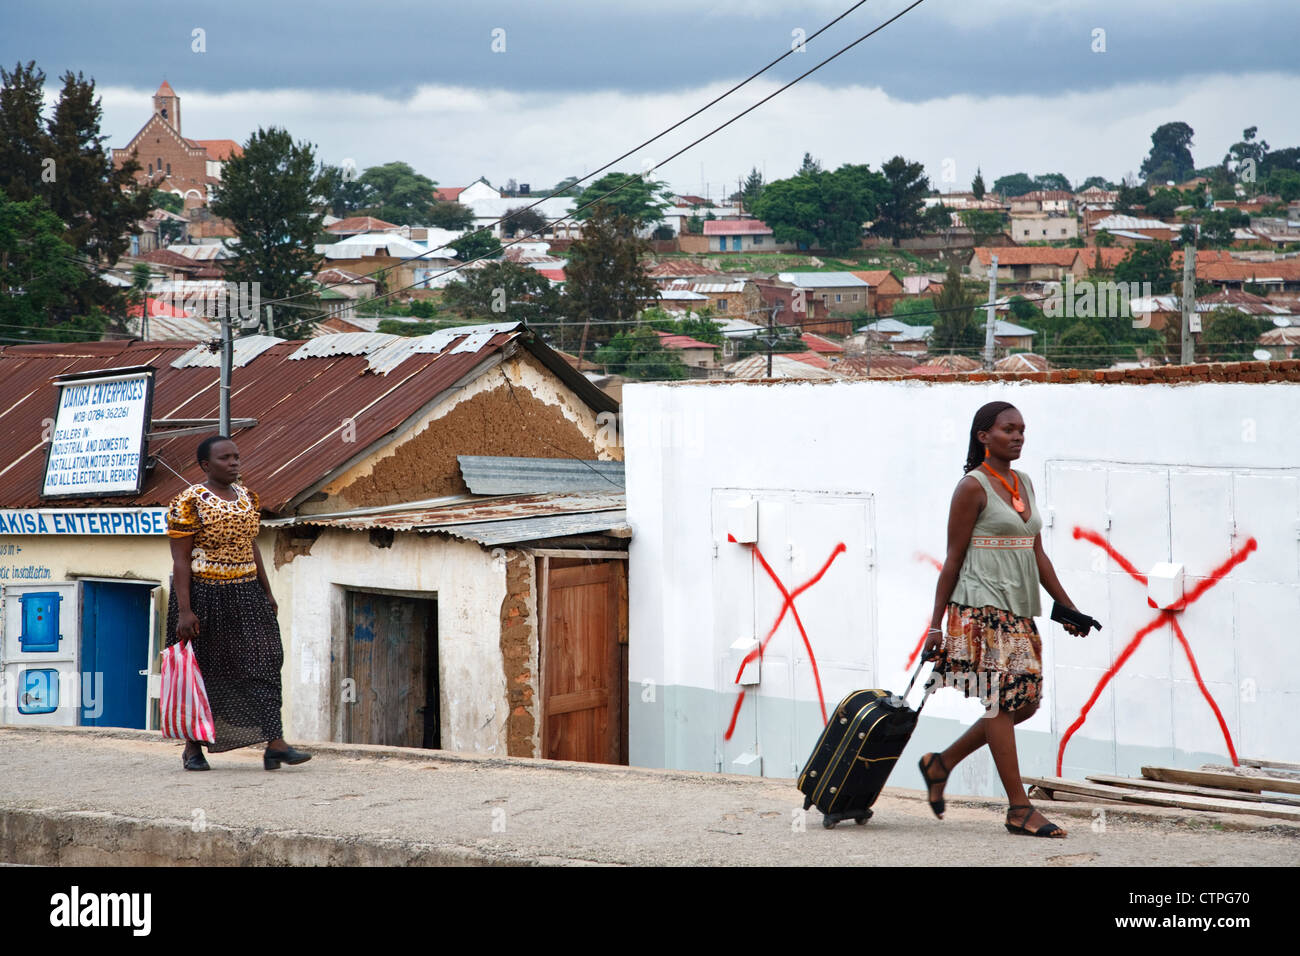 Täglichen Lebens Szene in Iringa, Tansania, Afrika. Zwei Frauen gehen auf die Straße Bürgersteig mit einem Stadtpanorama zu sehen. Stockfoto